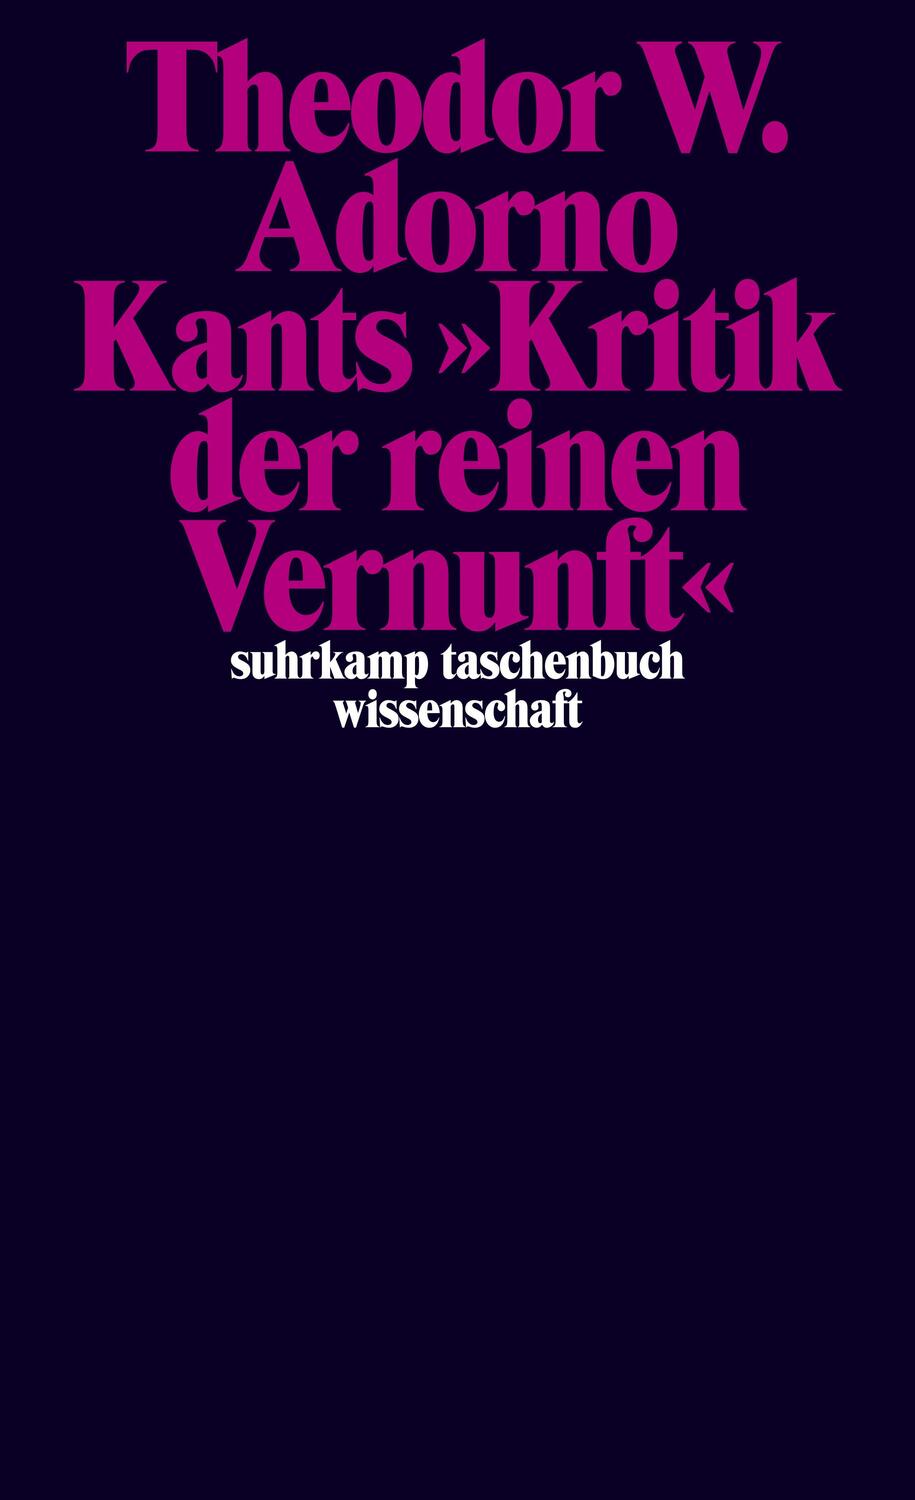 Kants »Kritik der reinen Vernunft« (1959) Band 4 - Adorno, Theodor W.